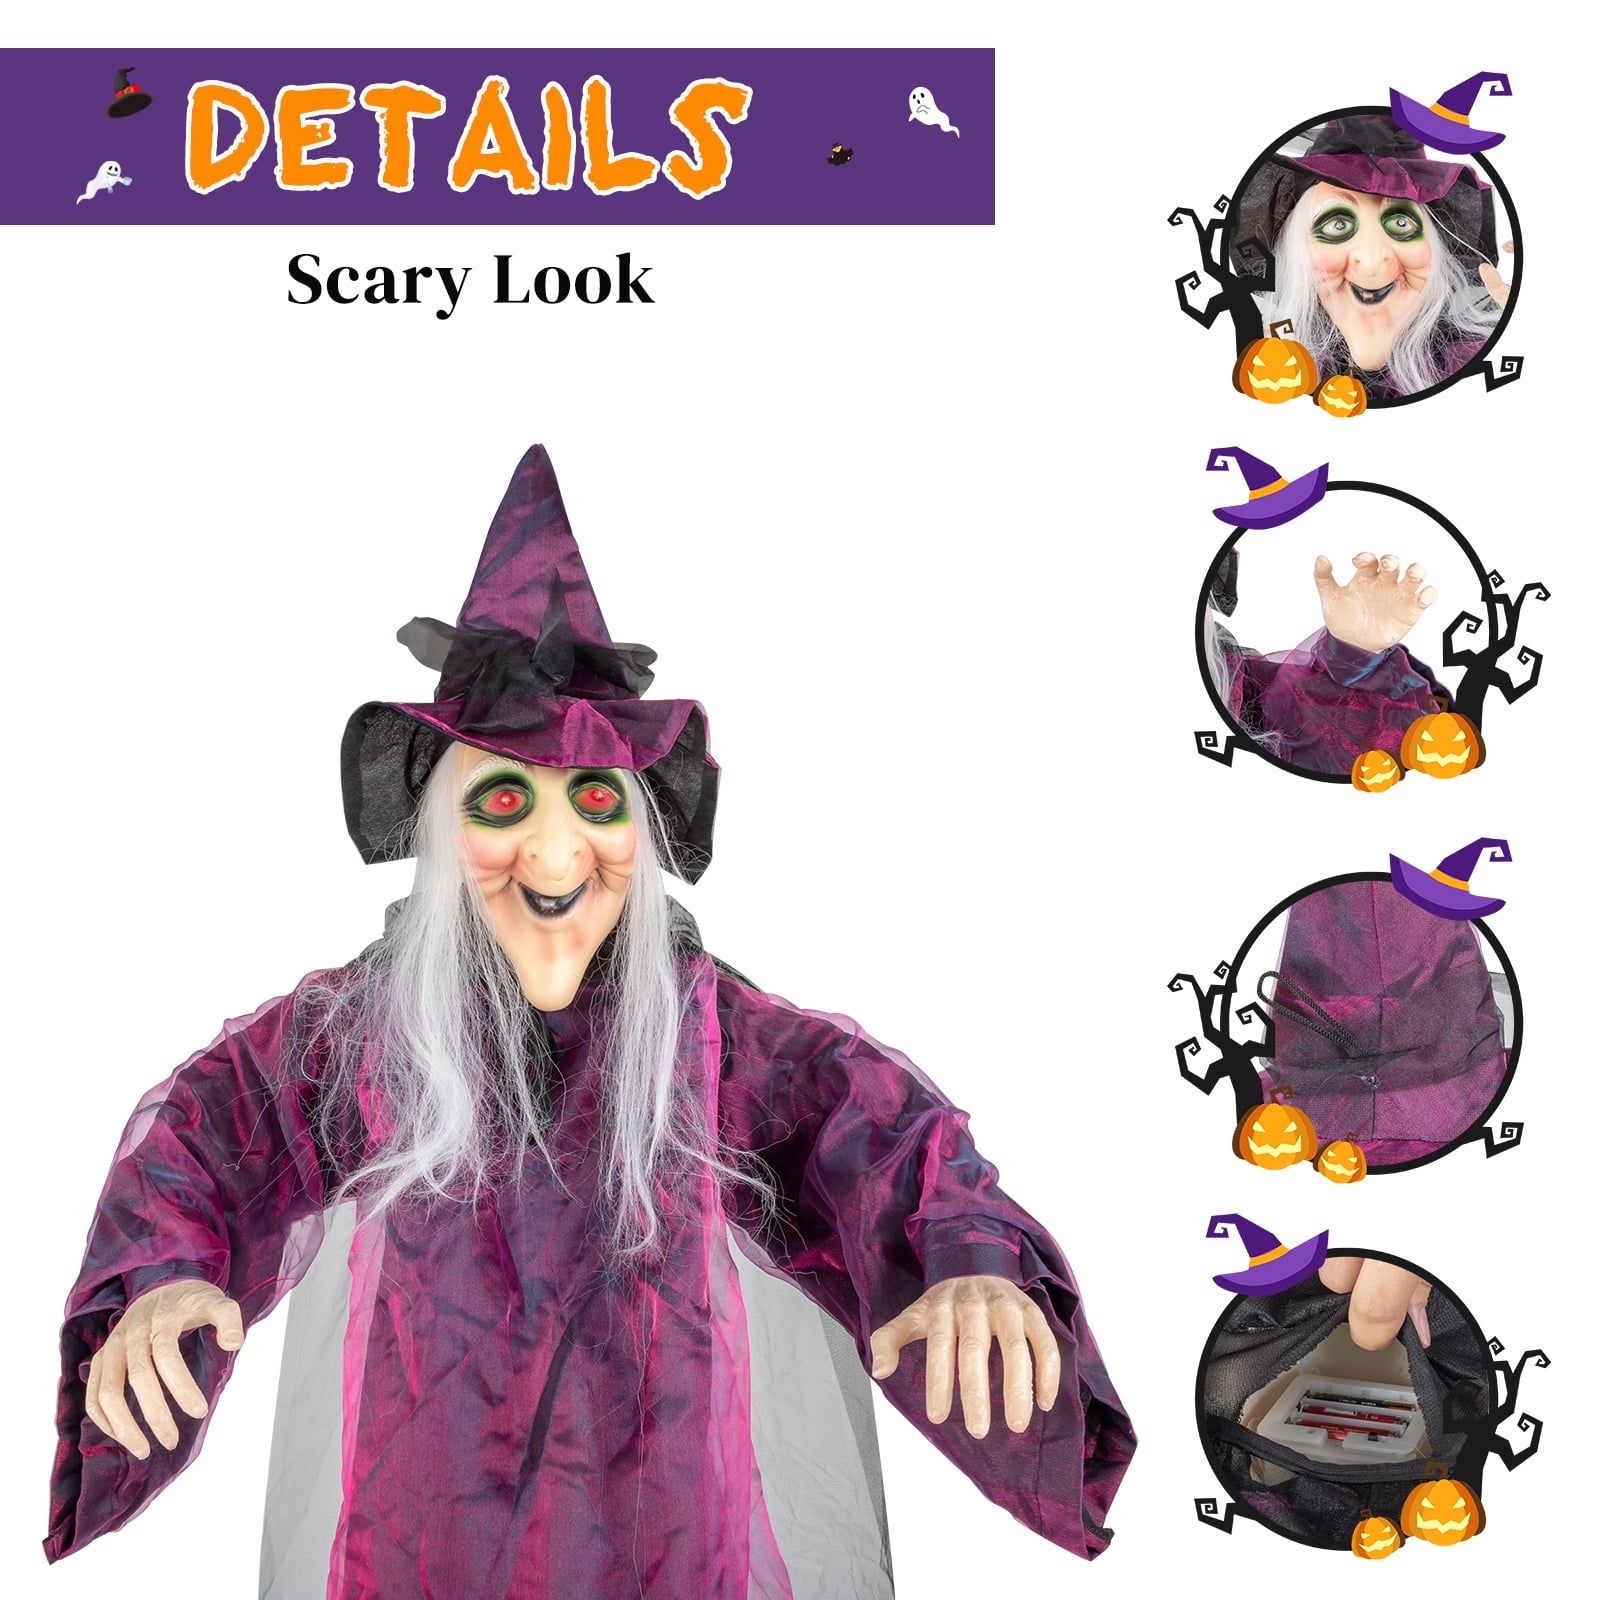 Compre Halloween Hanging Witch NOVO Assustador Gritando Esqueleto Bruxa  Decoração de Halloween